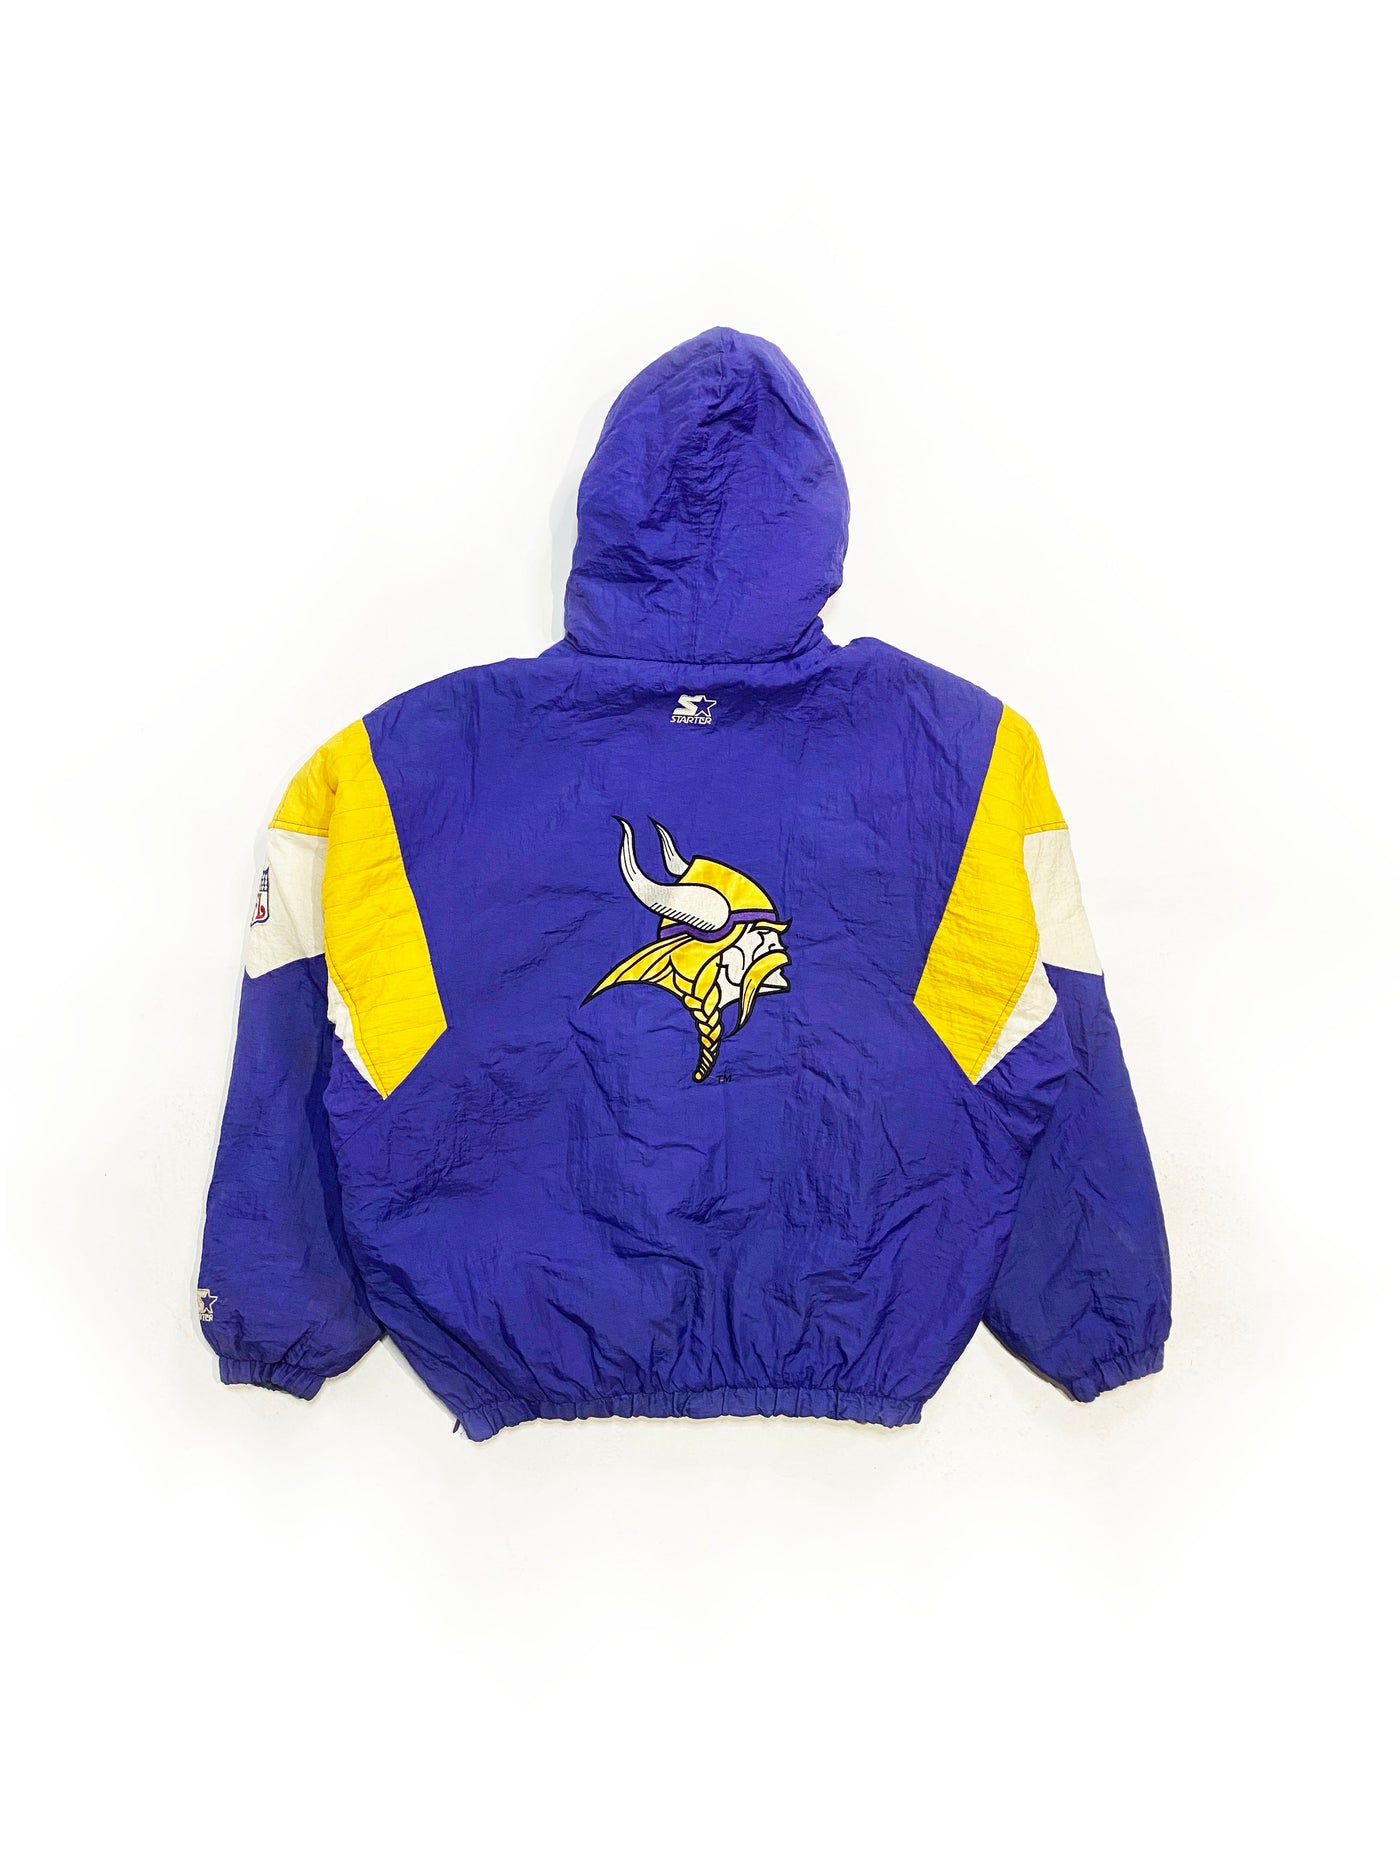 Vintage Minnesota Vikings Starter Jacket